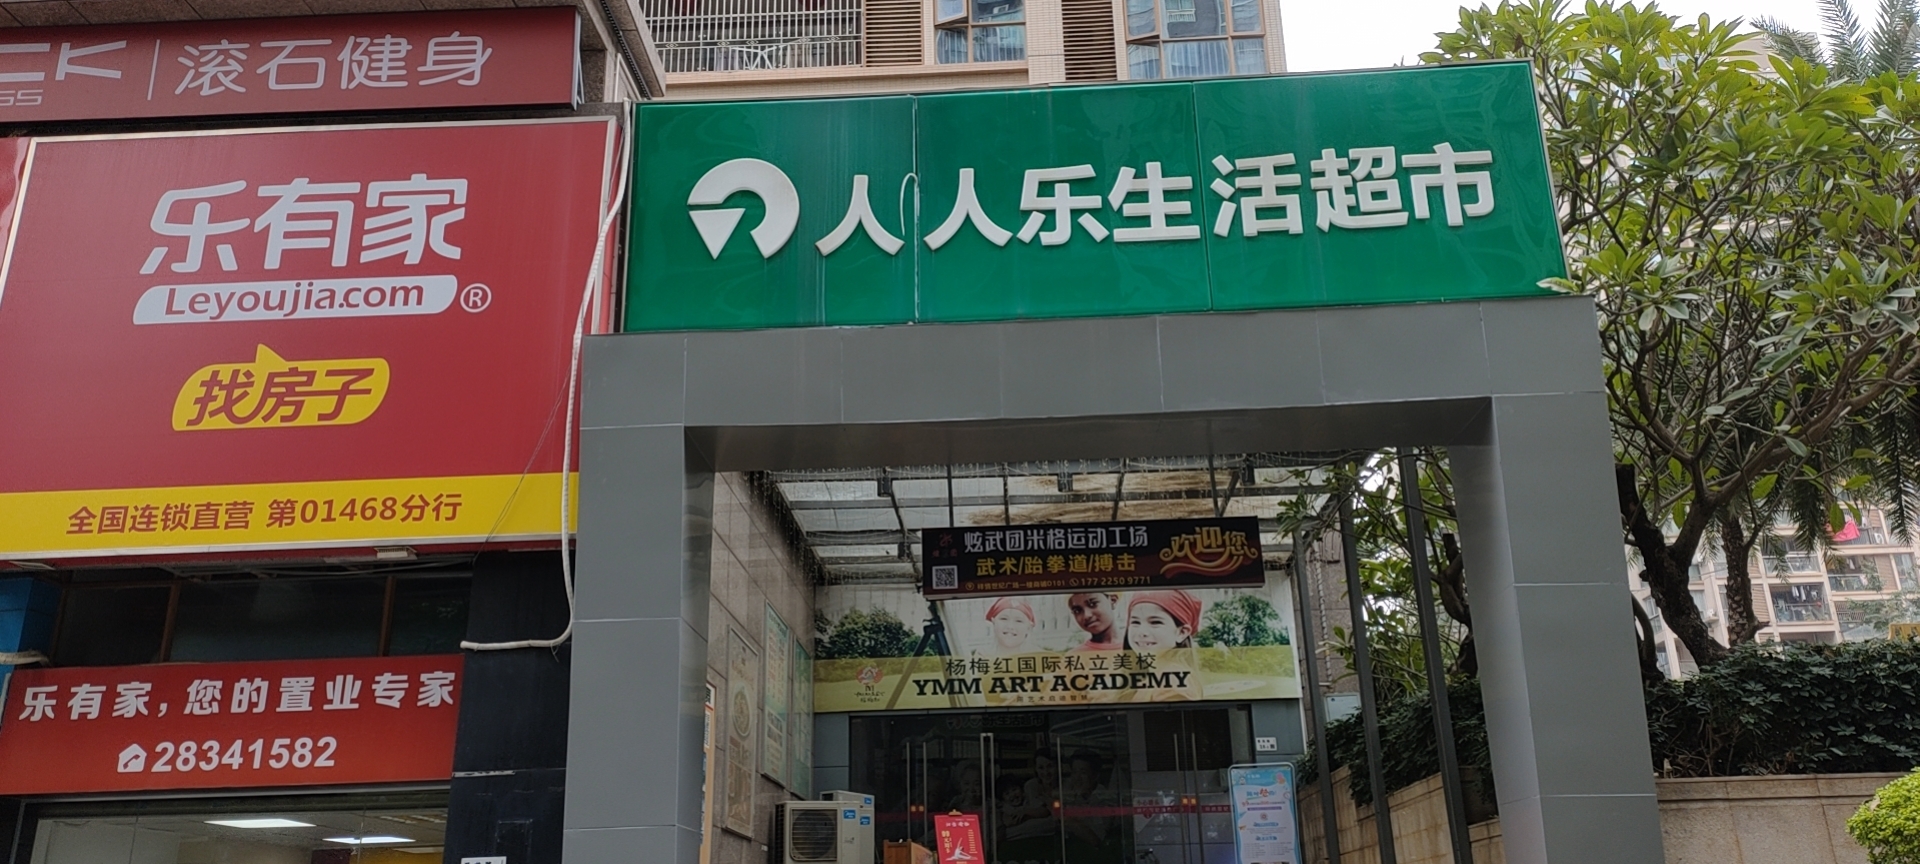 广东省深圳市人人乐商业有限公司祥情世纪生活超市